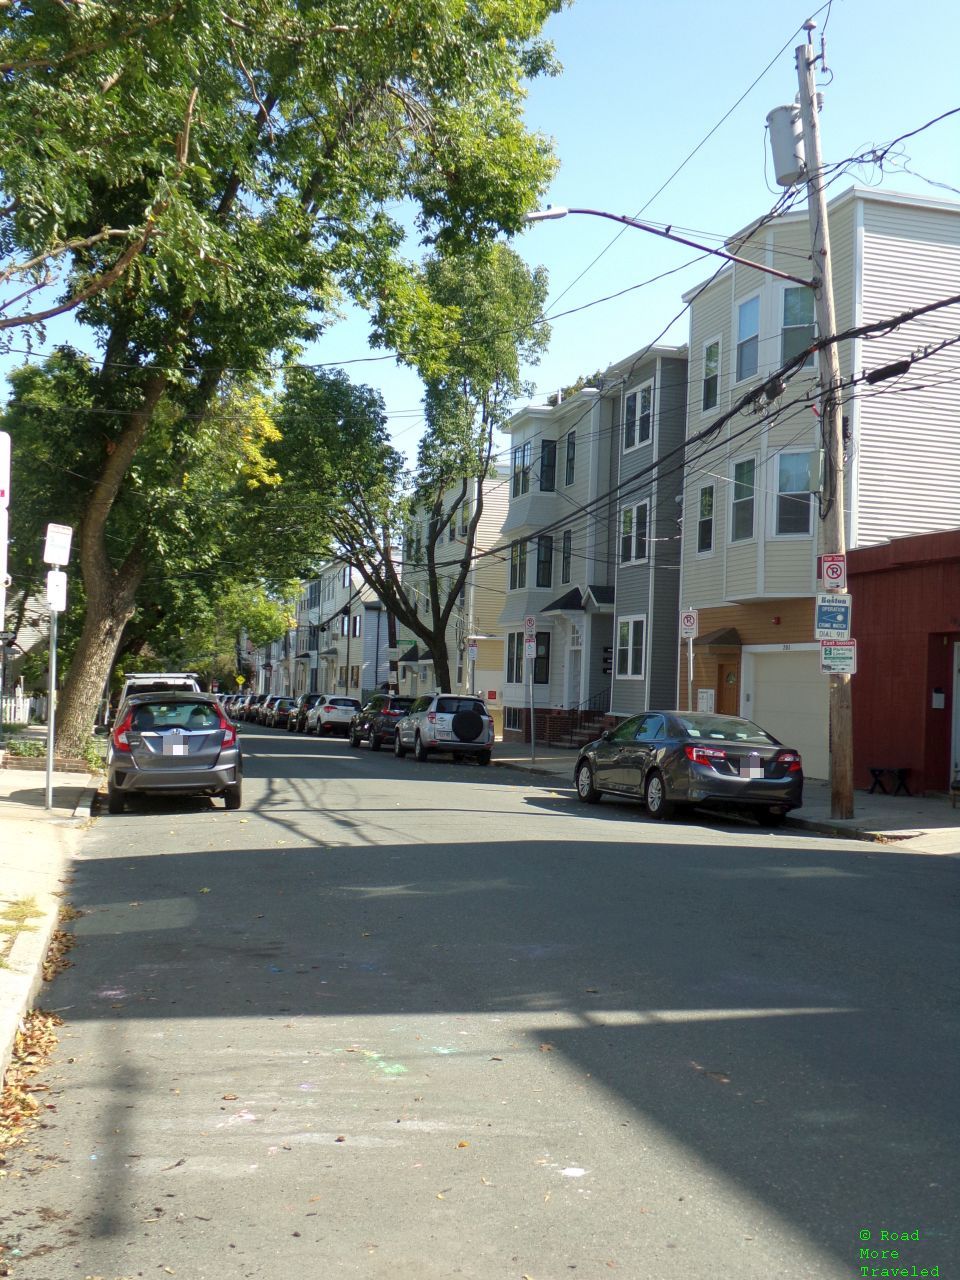 Short walking tour of East Boston - residential neighborhood on Everett Street